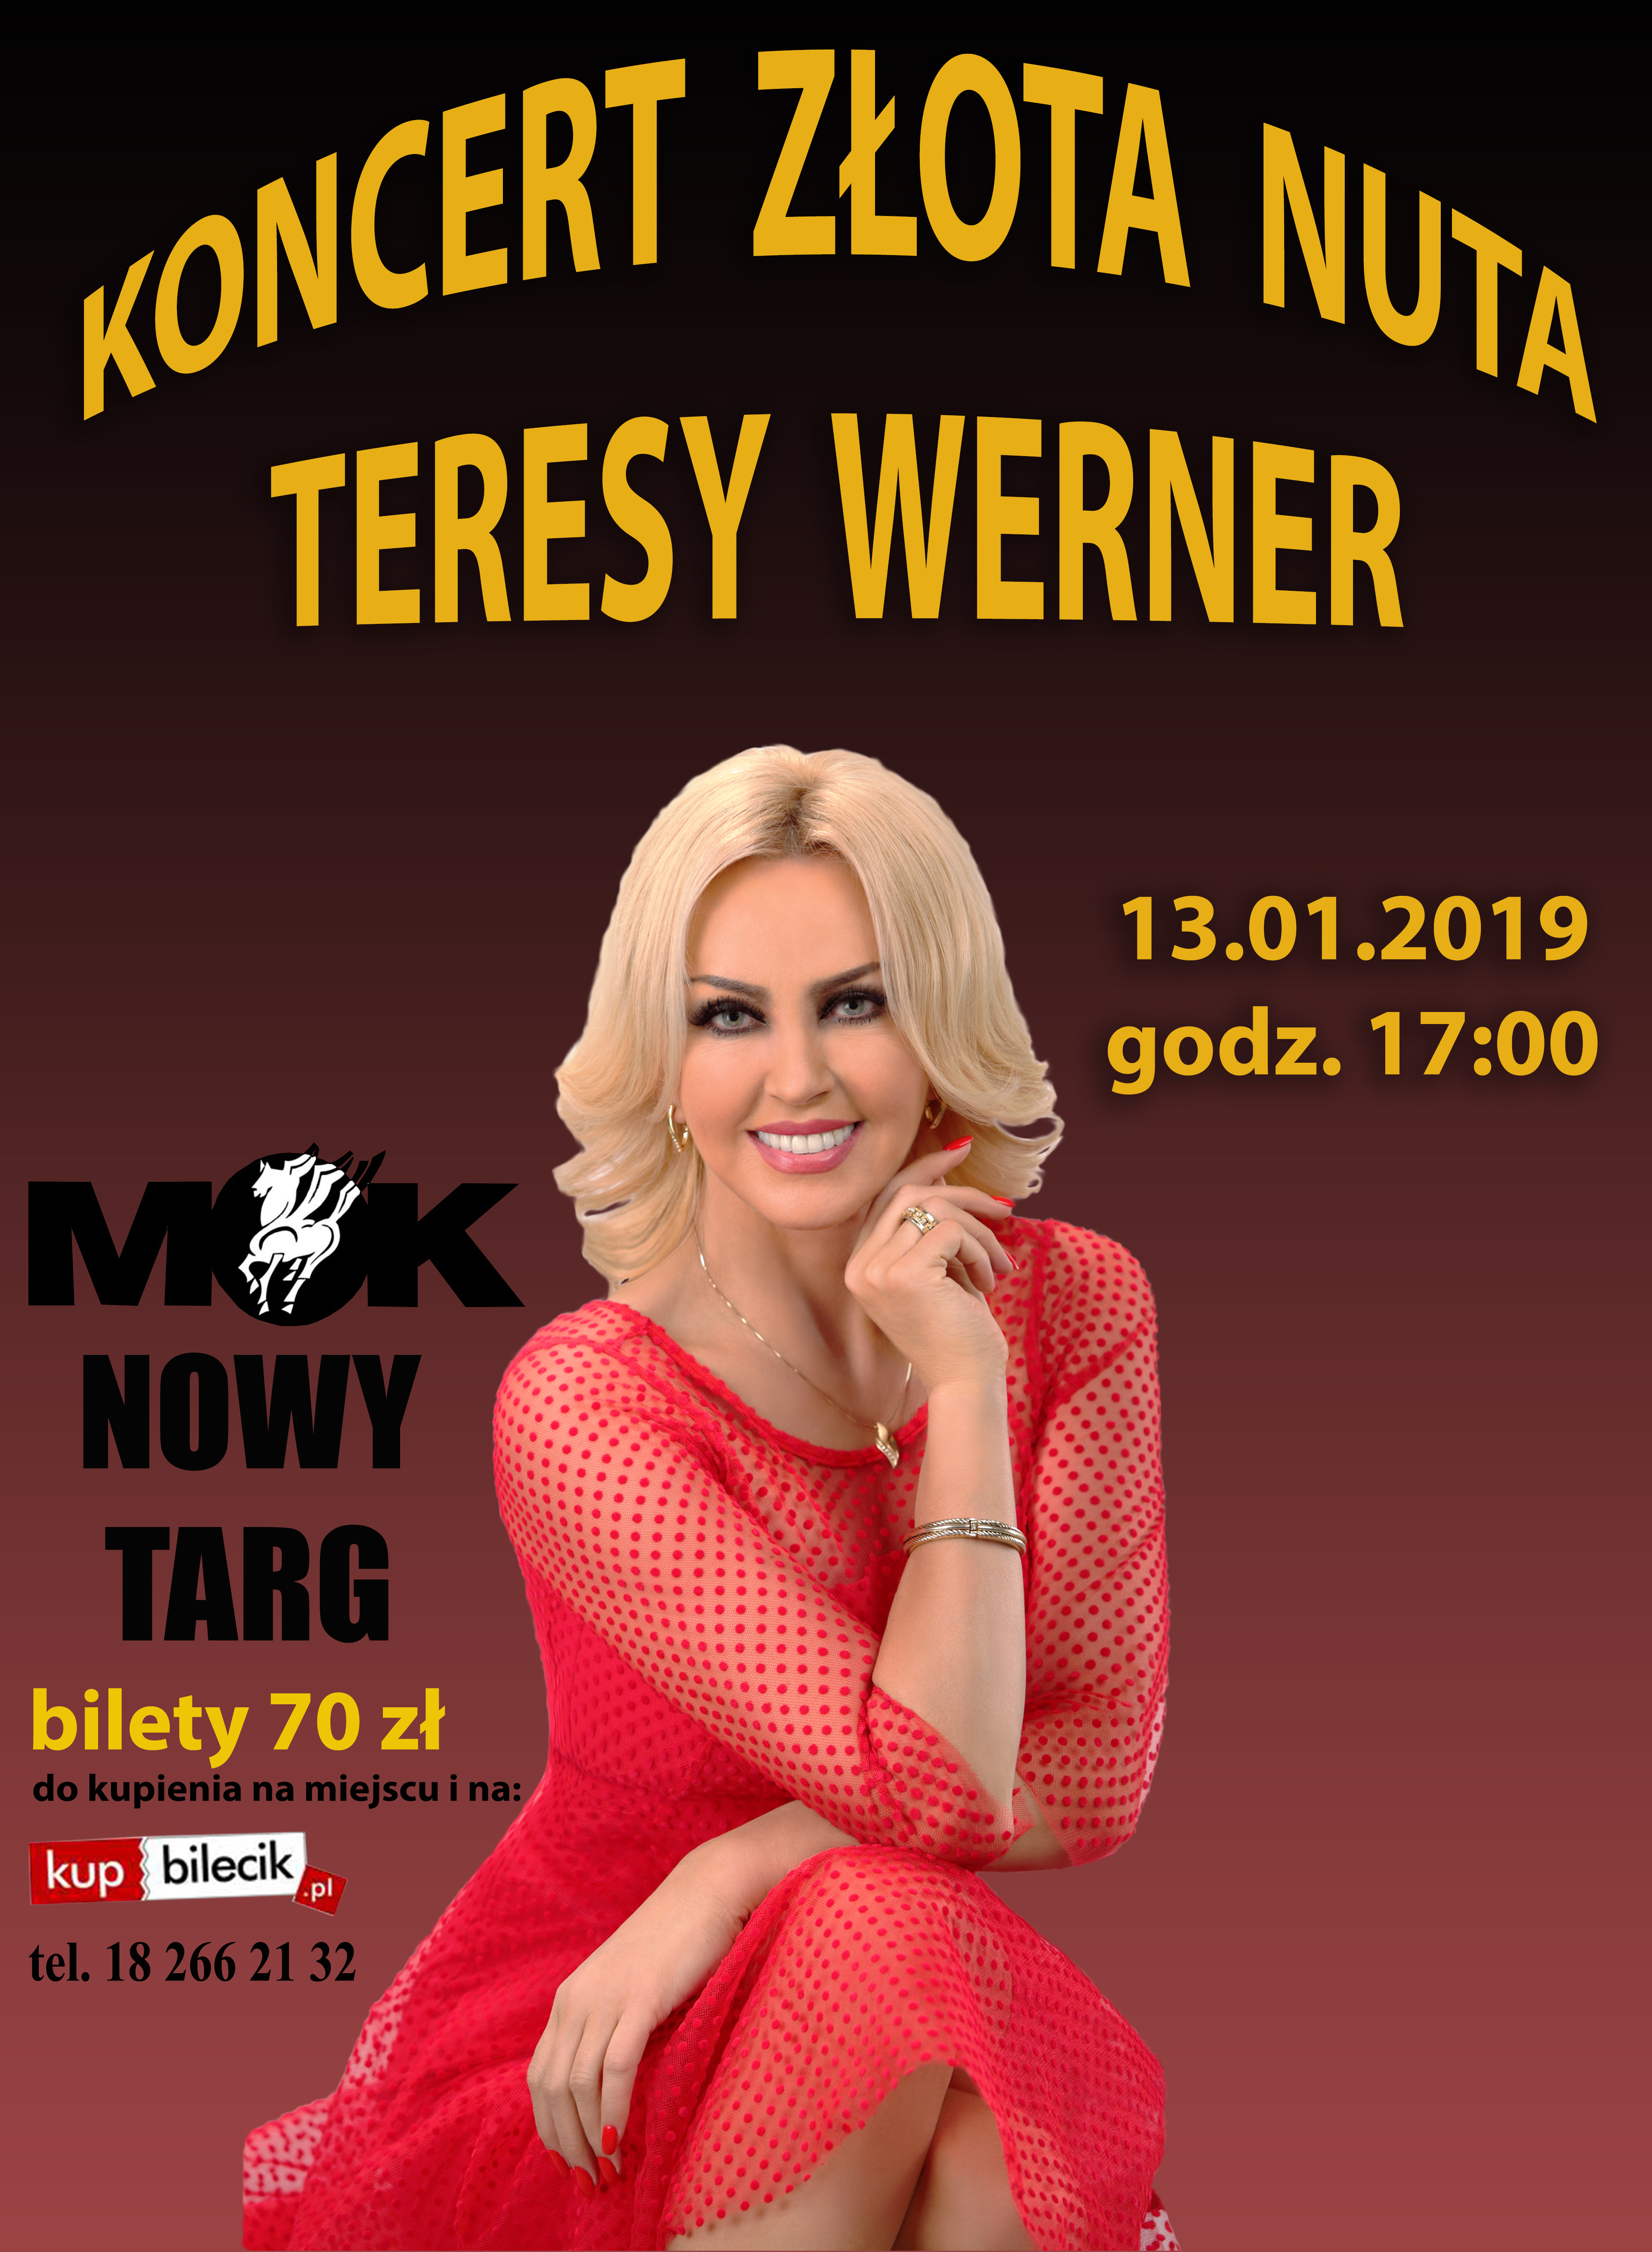 Ile Trwa Koncert Teresy Werner Koncert Złota Nuta Teresy Werner | Zakopane - oficjalny serwis internetowy